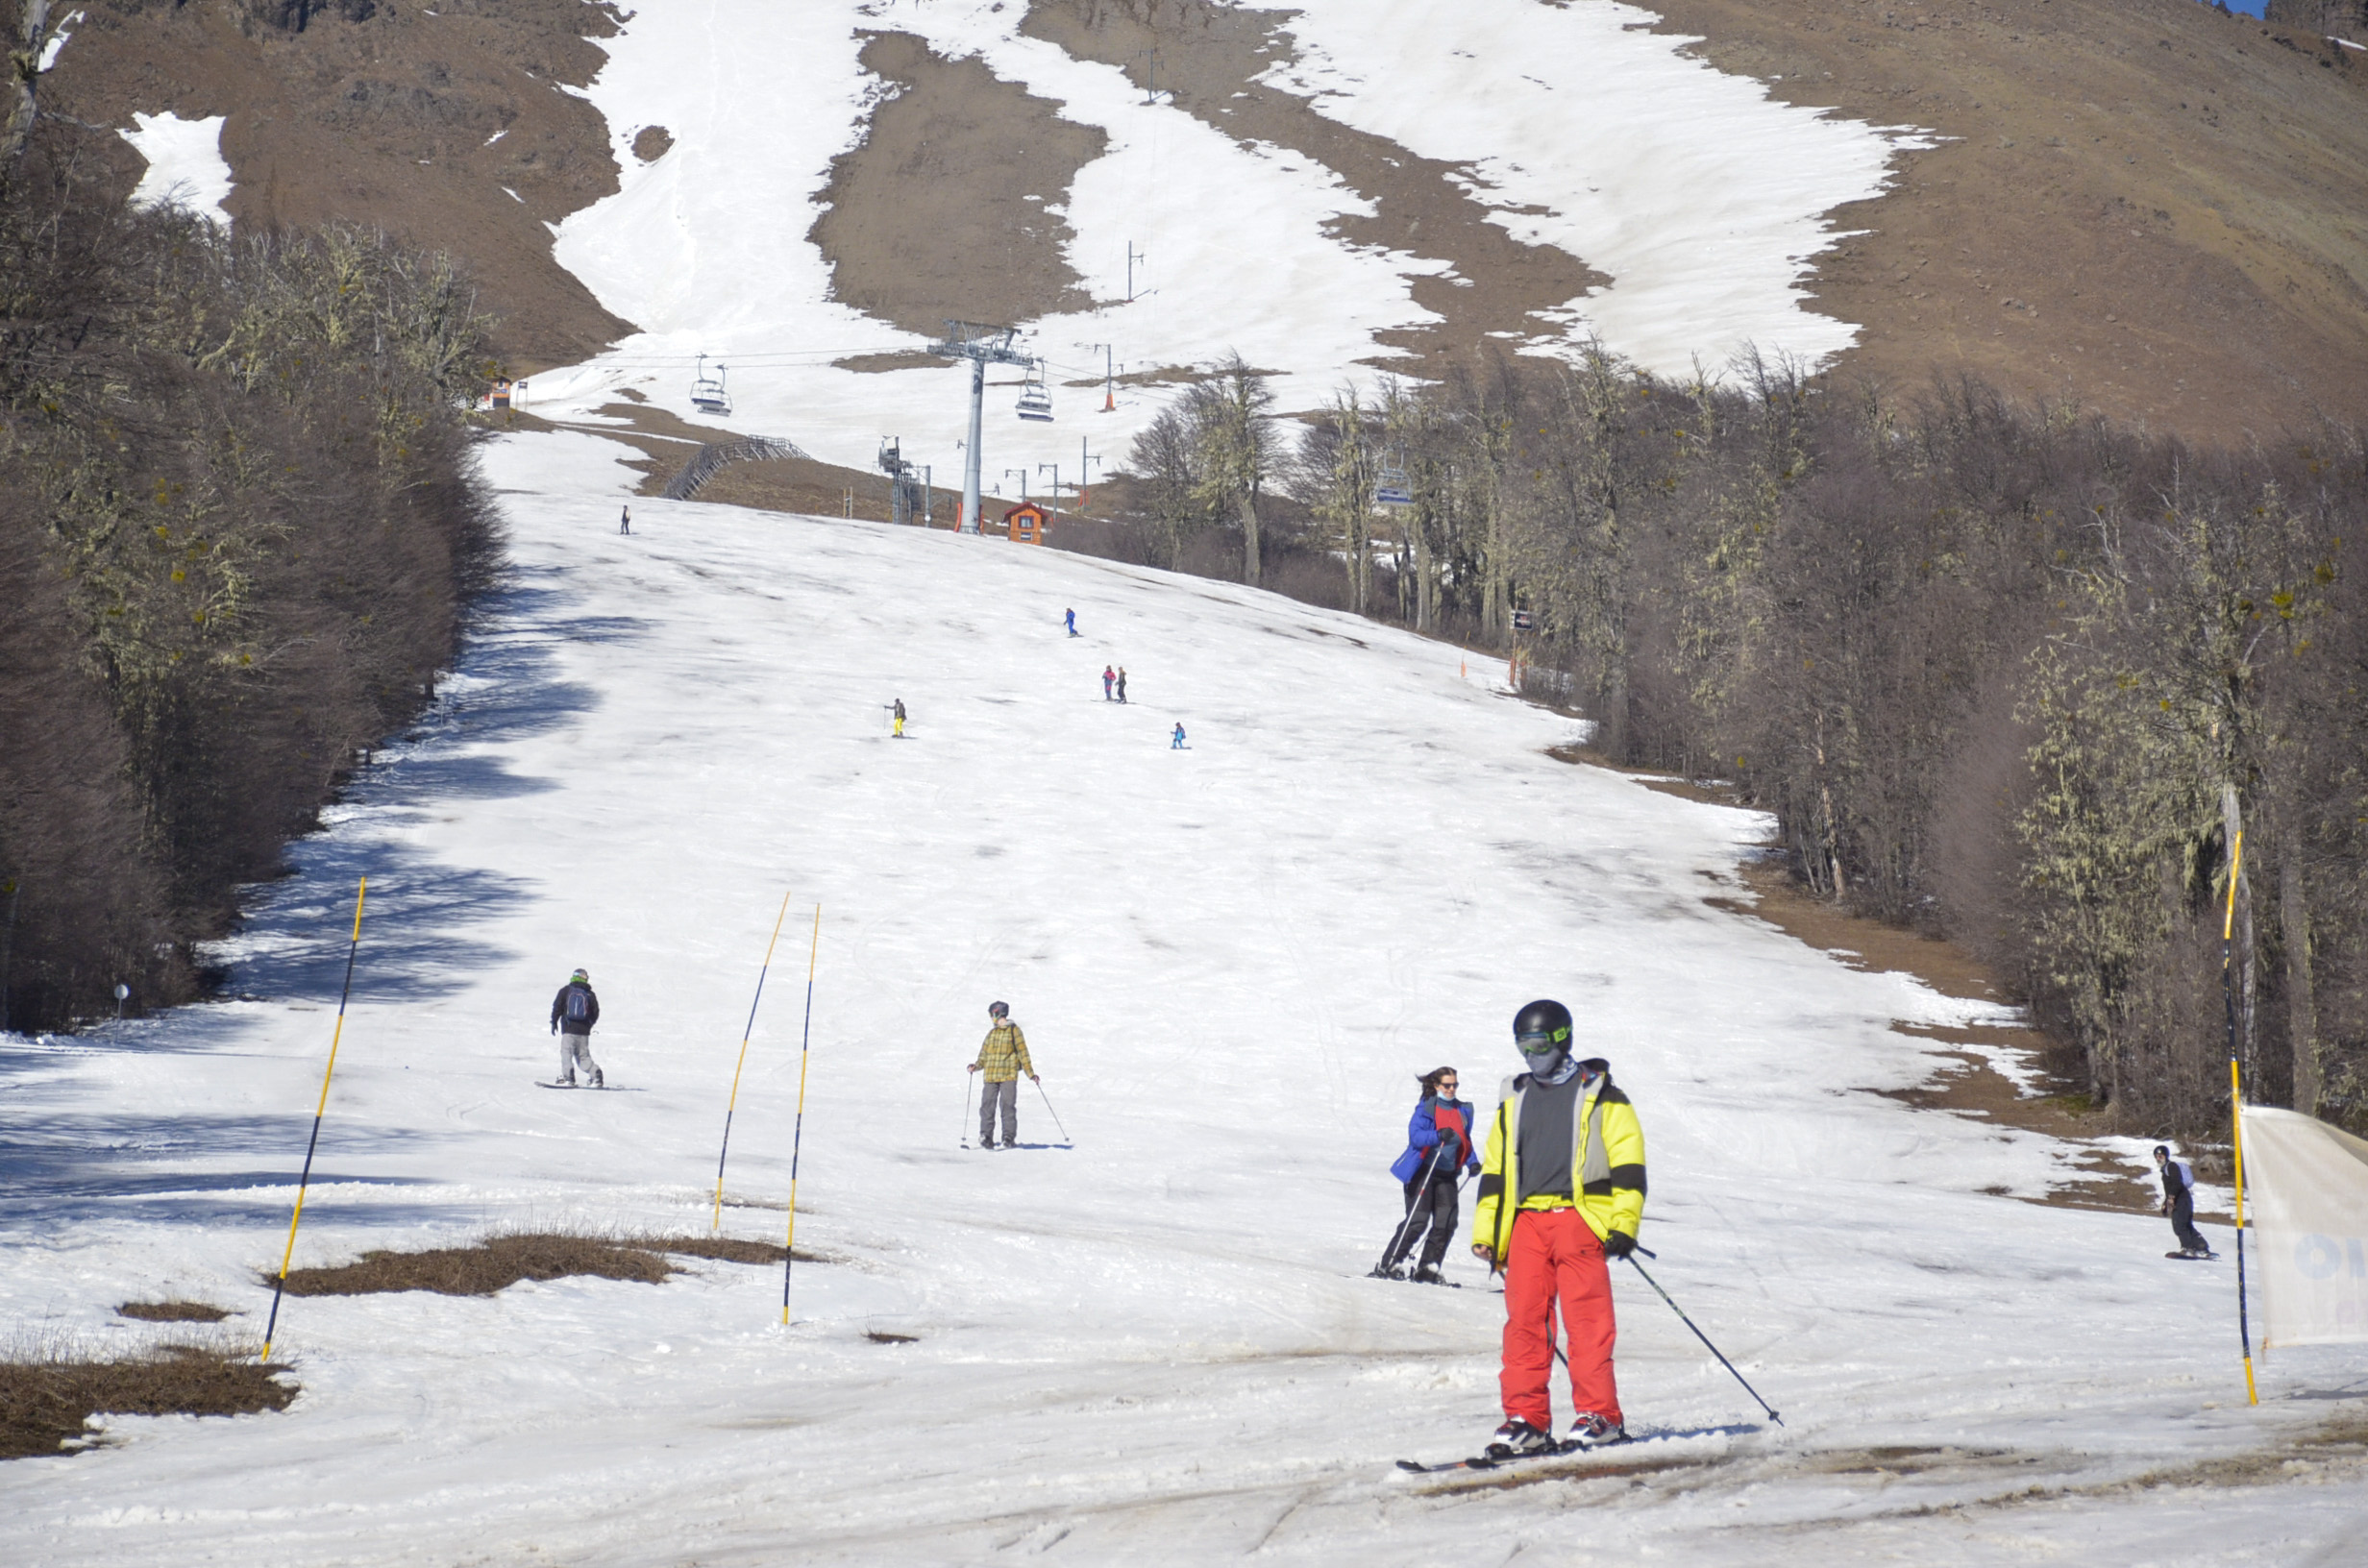 Cerro Chapelco: las zonas de esquí habilitadas ante la crítica situación de nieve